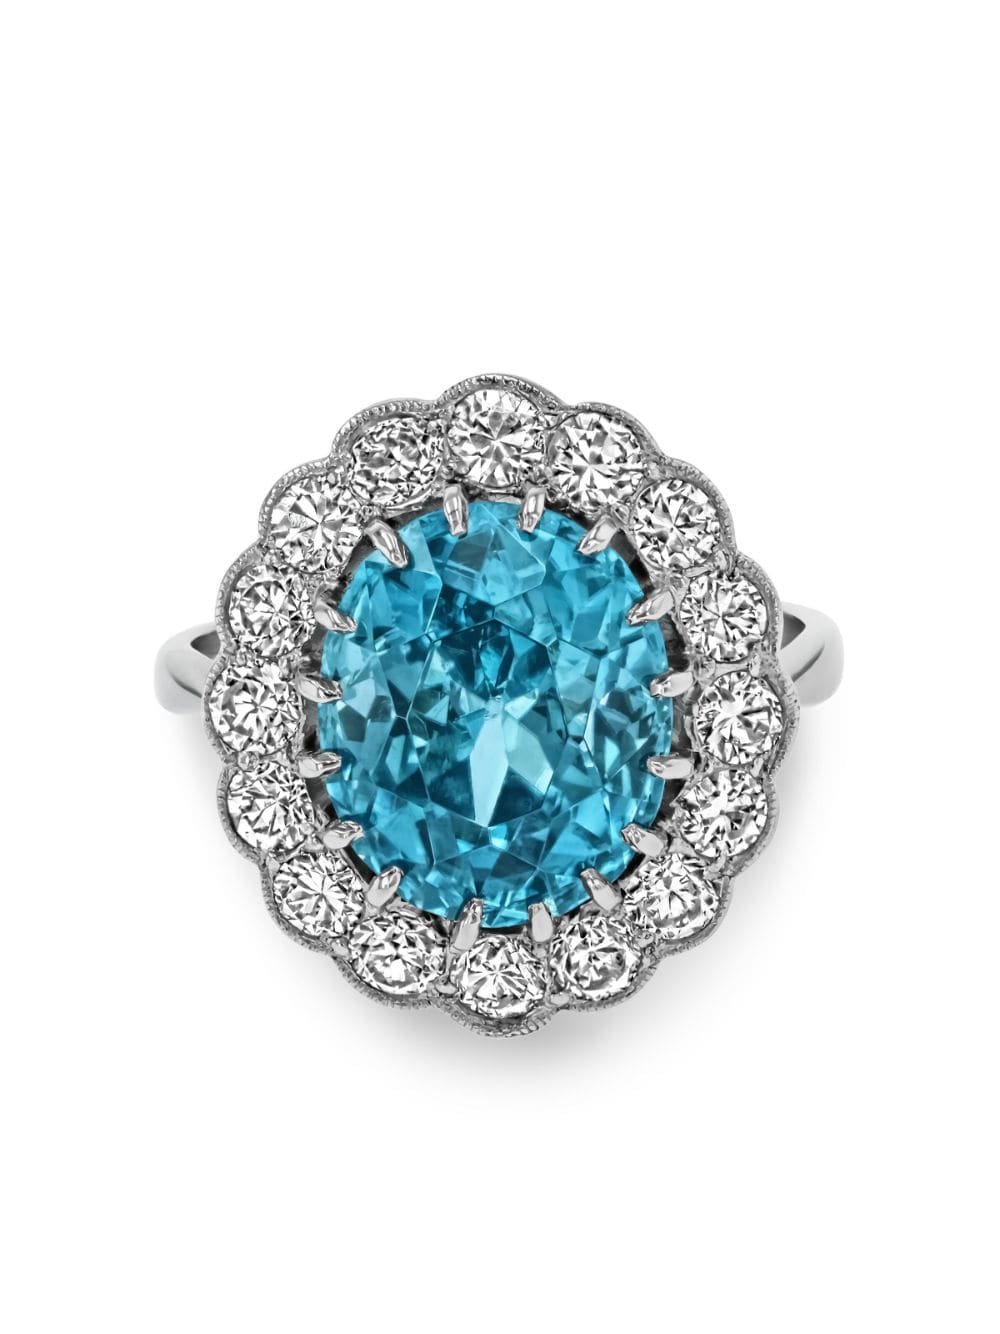 Pragnell Vintage 18kt white gold blue zircon and diamond ring - Silver von Pragnell Vintage